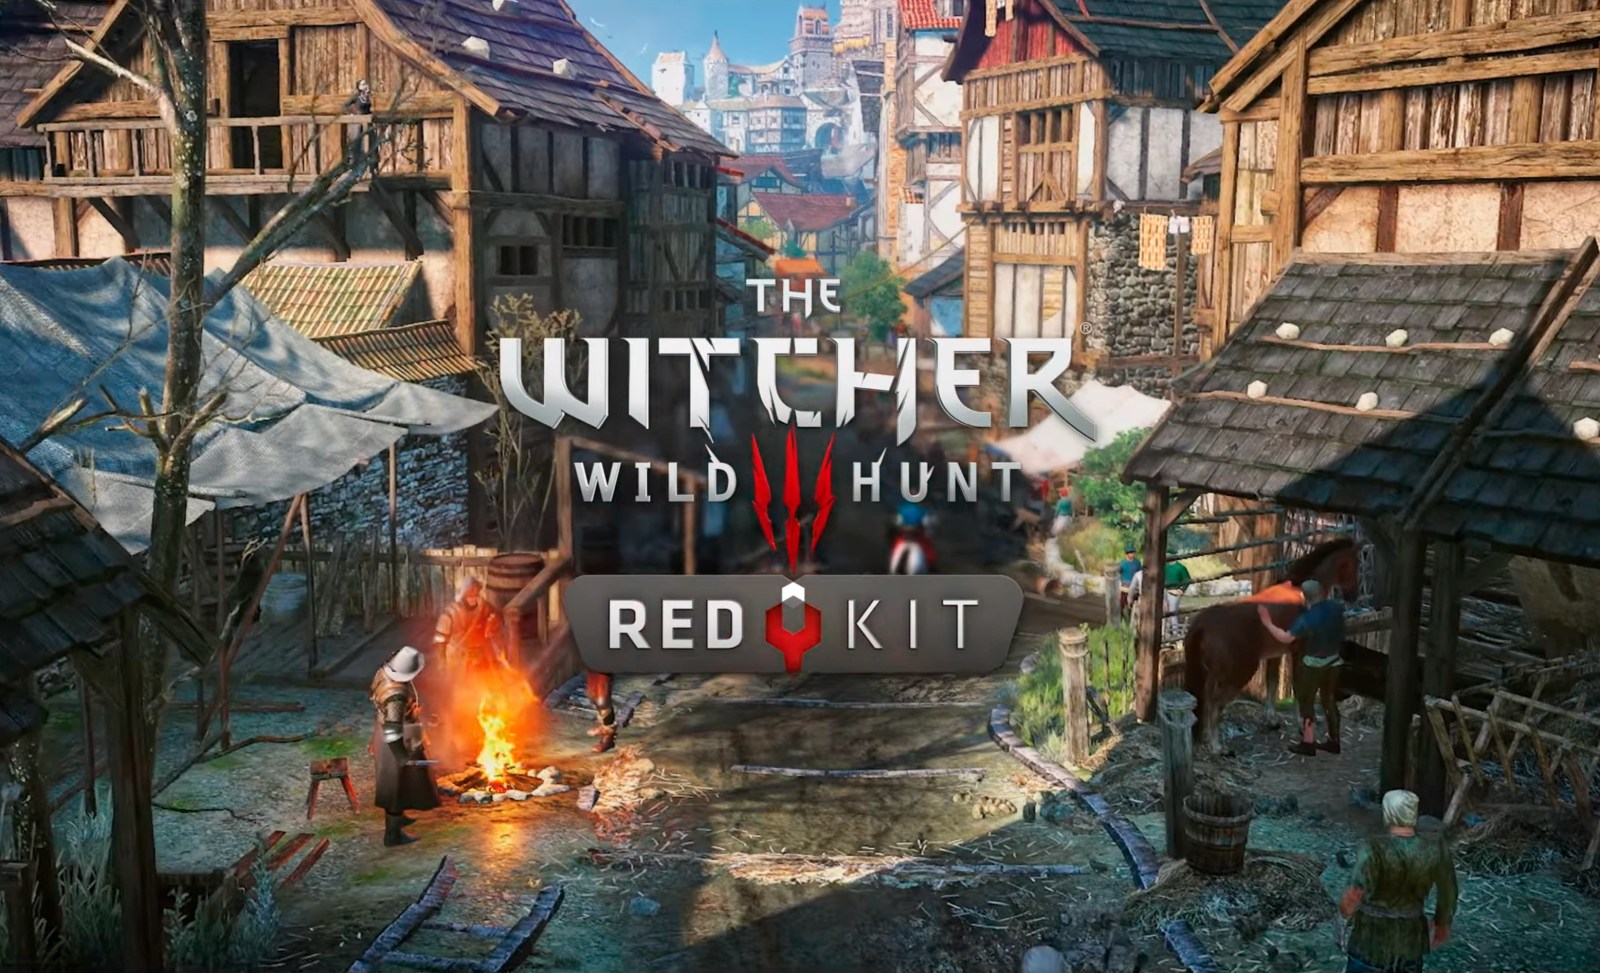 Säg ja till mods: CD Projekt RED släpper officiell verktygslåda för moddning av The Witcher 3